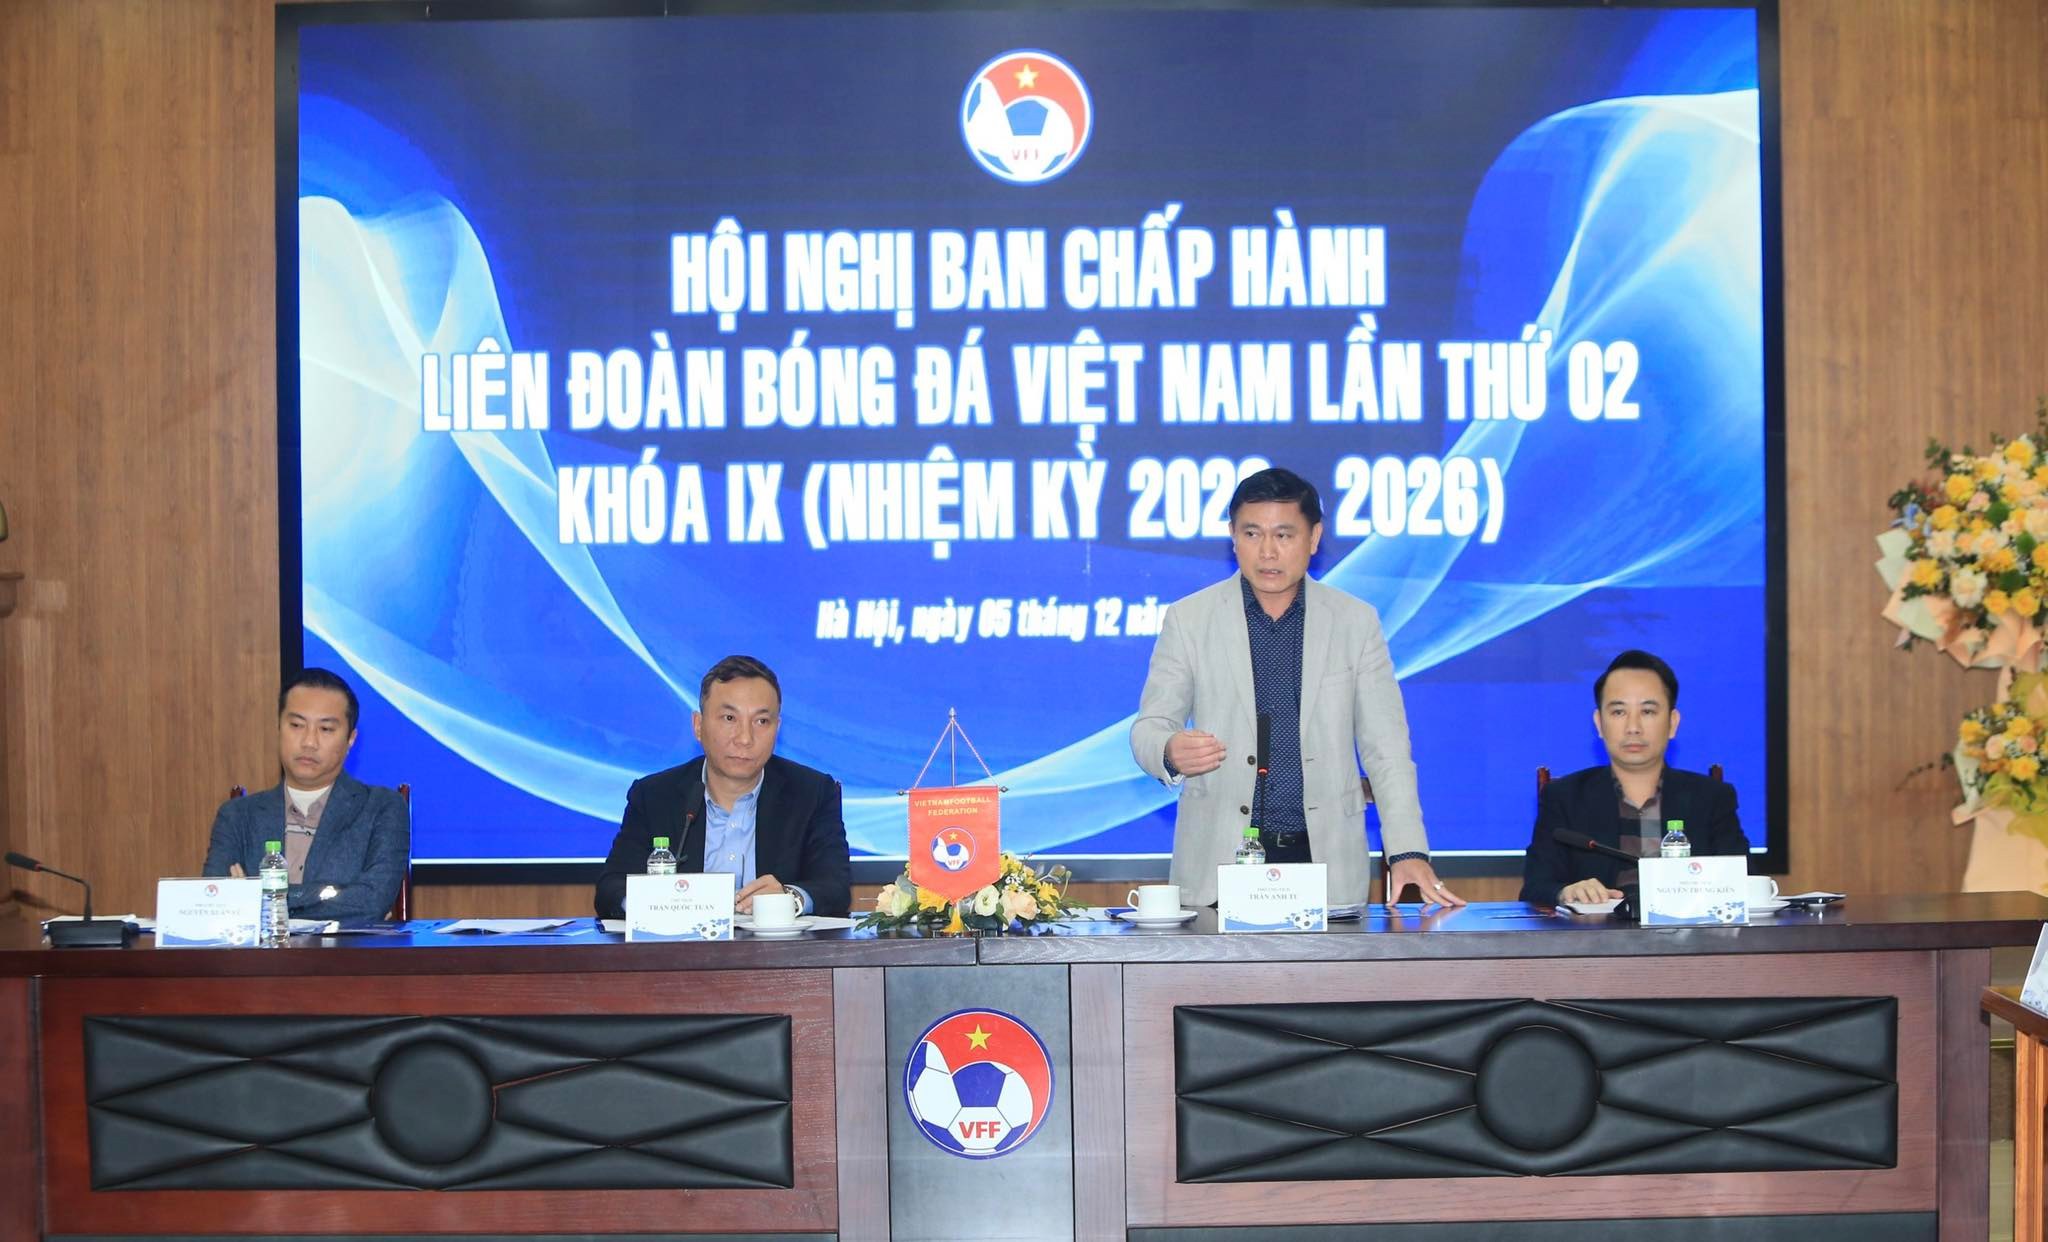 Phó chủ tịch phụ trách chuyên môn, Chủ tịch HĐQT VPF Trần Anh Tú tiết lộ VPF sẽ đưa 4 xe VAR vào sử dụng ở V.League sắp tới - Ảnh: Đức Cường 